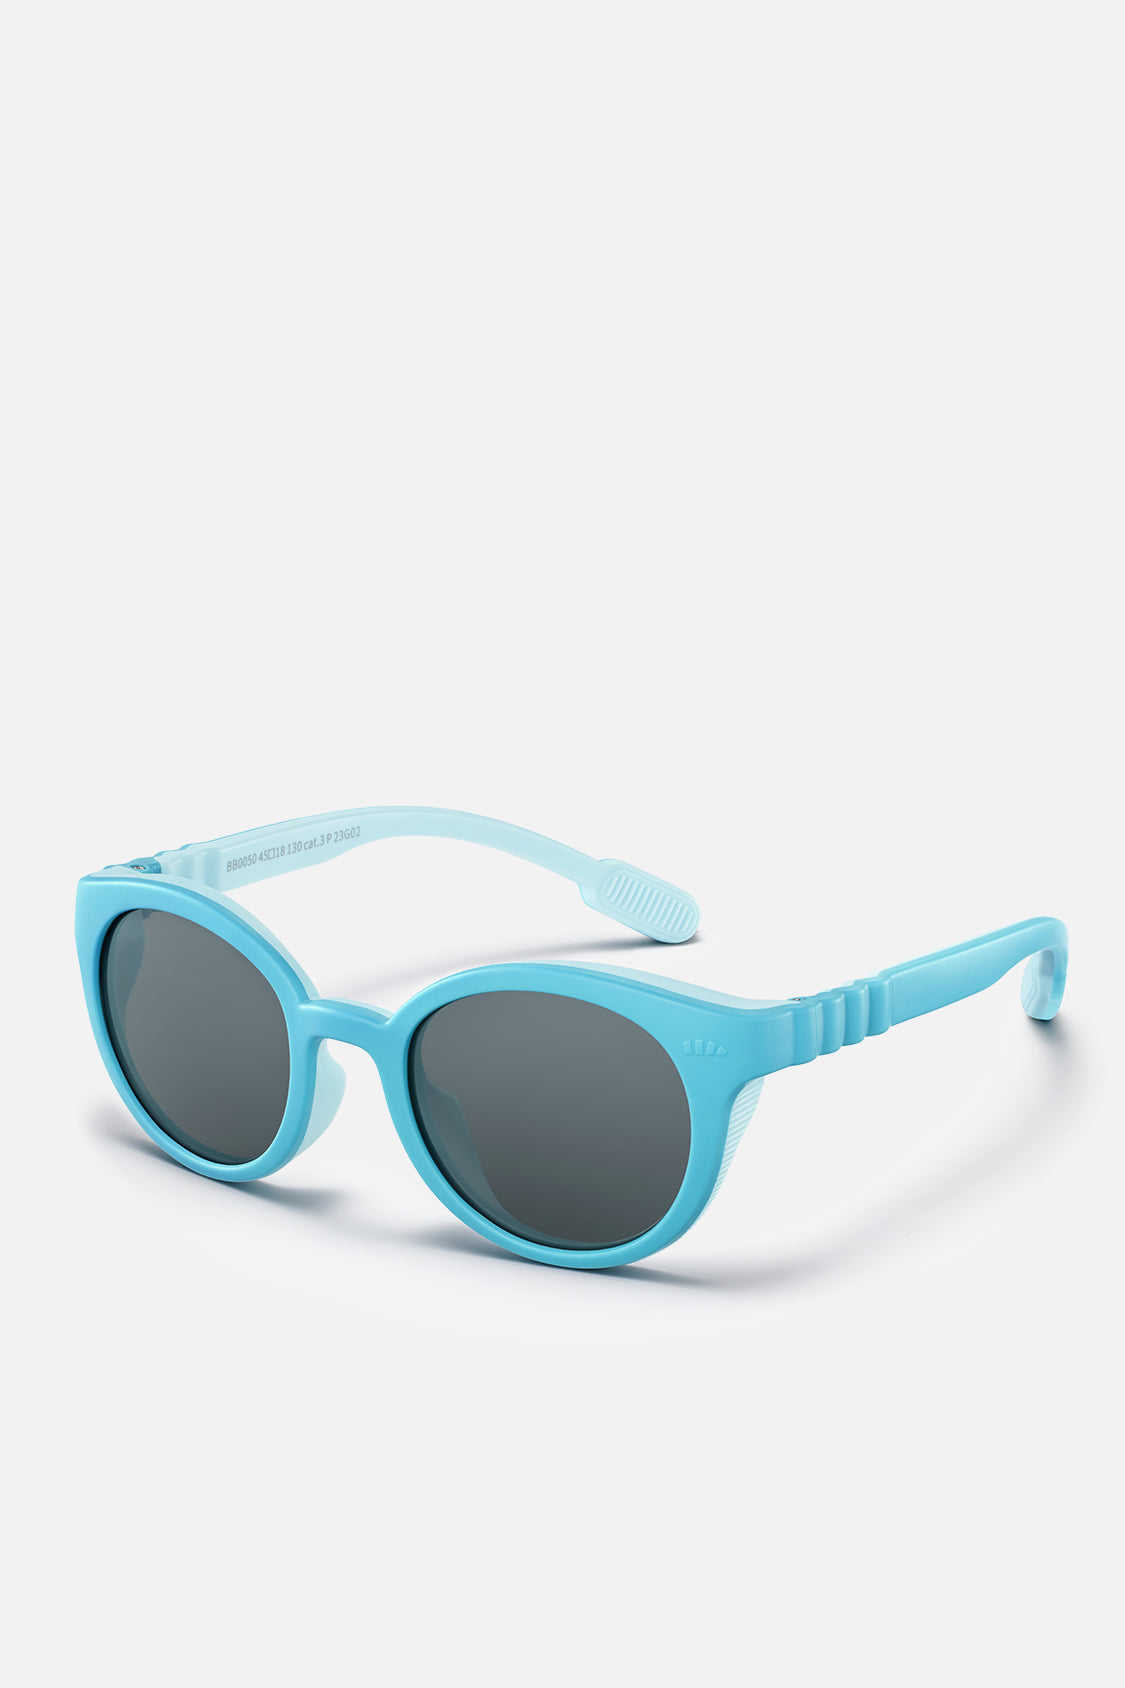 beneunder kid's protective sunglasses UV400 #color_phantom sky blue sky